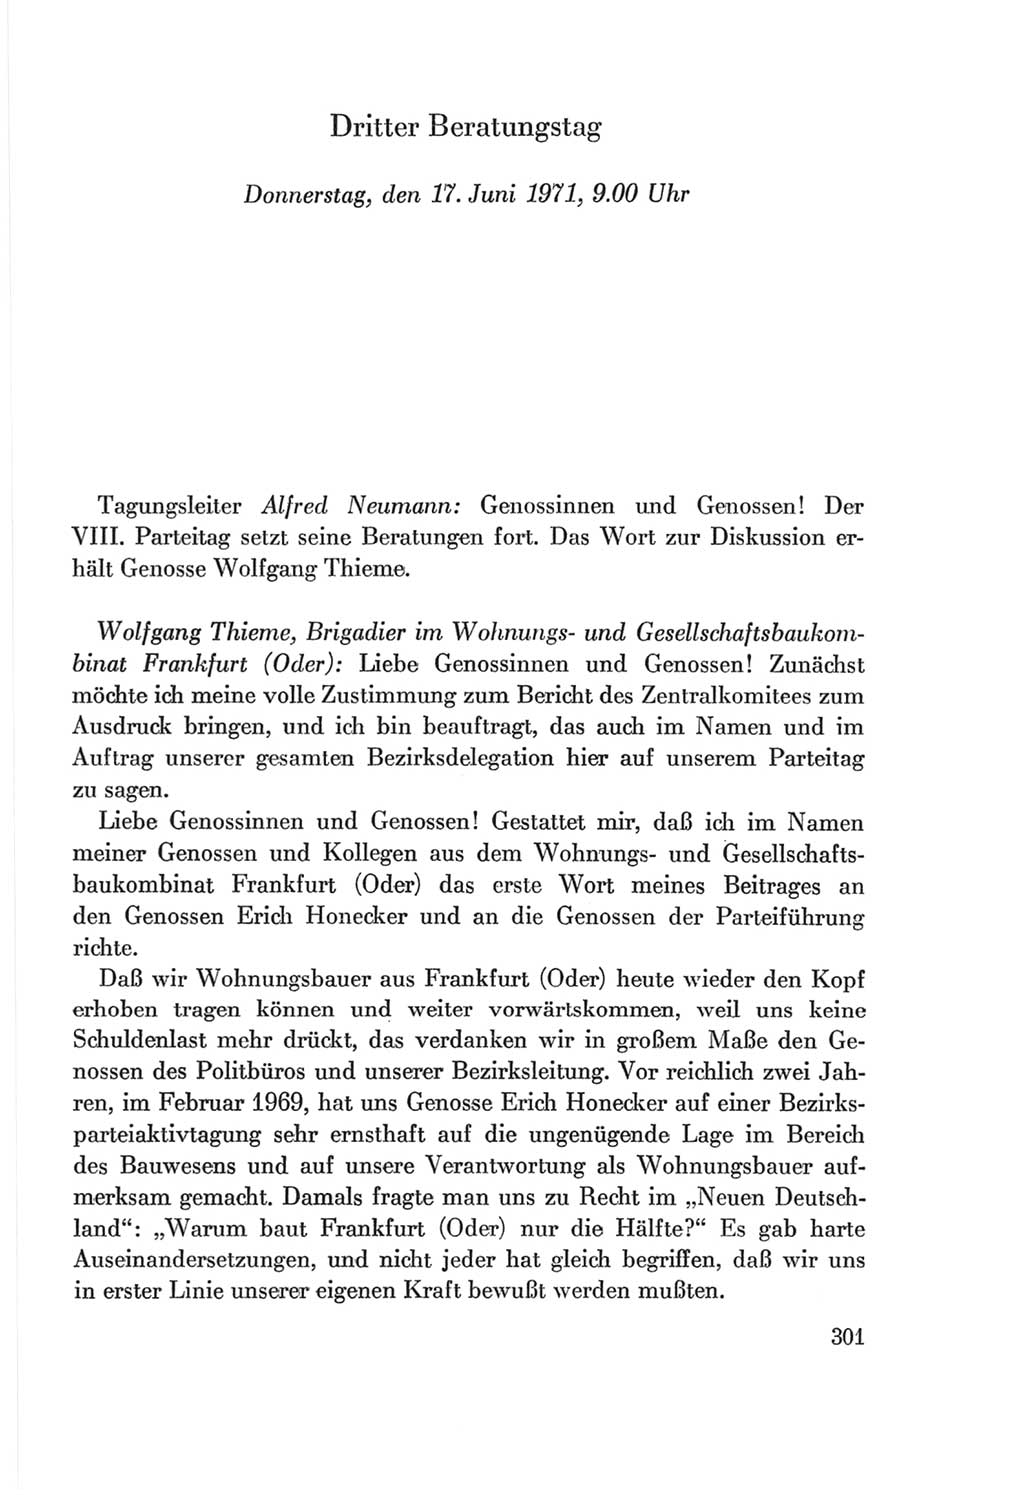 Protokoll der Verhandlungen des Ⅷ. Parteitages der Sozialistischen Einheitspartei Deutschlands (SED) [Deutsche Demokratische Republik (DDR)] 1971, Band 1, Seite 301 (Prot. Verh. Ⅷ. PT SED DDR 1971, Bd. 1, S. 301)